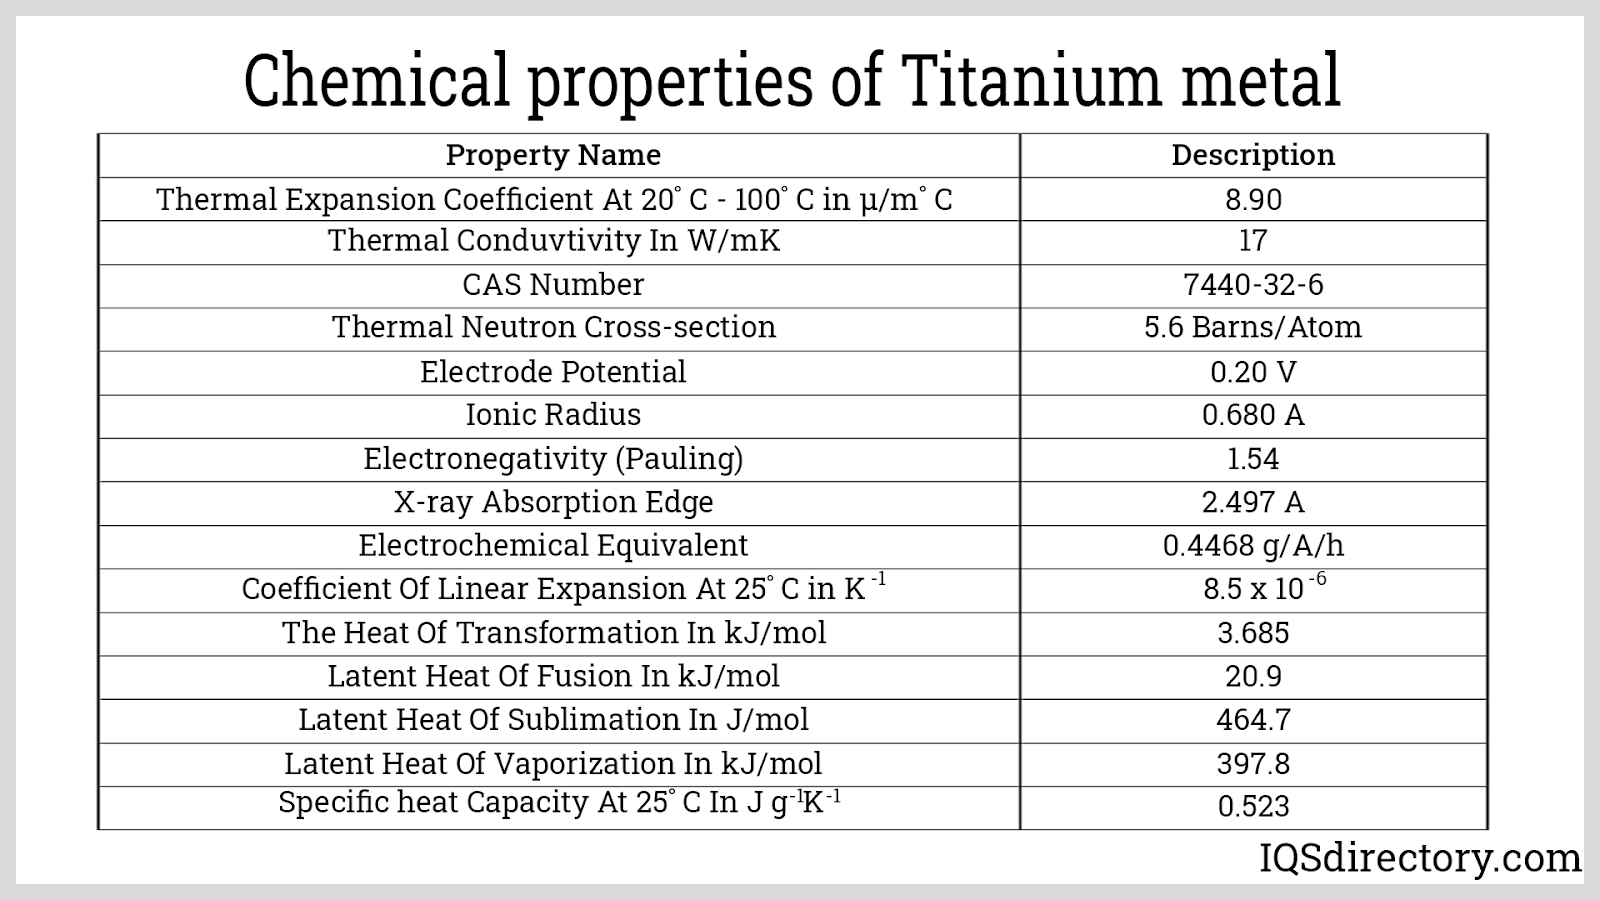 Chemical properties of Titanium metal